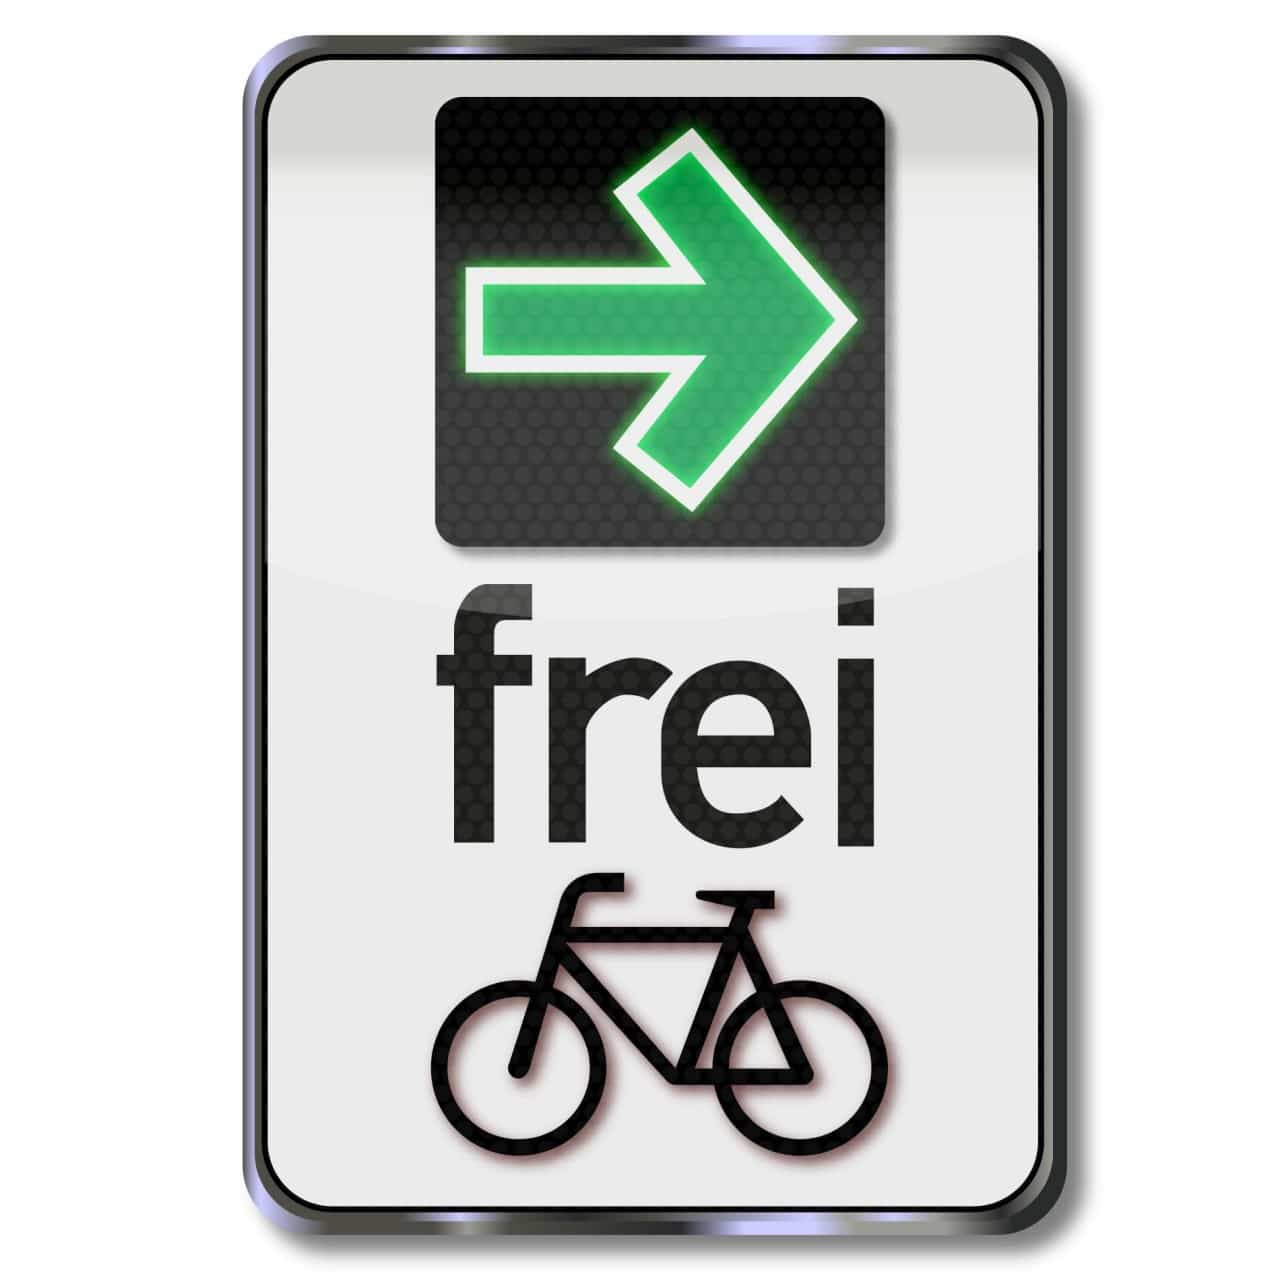 Grüner Pfeil Radfahrer Radler Abbiegepfeil Ampel Rotlicht Grünpfeil Pilotprojekt Fahrradstadt Verkehr PRO AUGSBURG Antrag